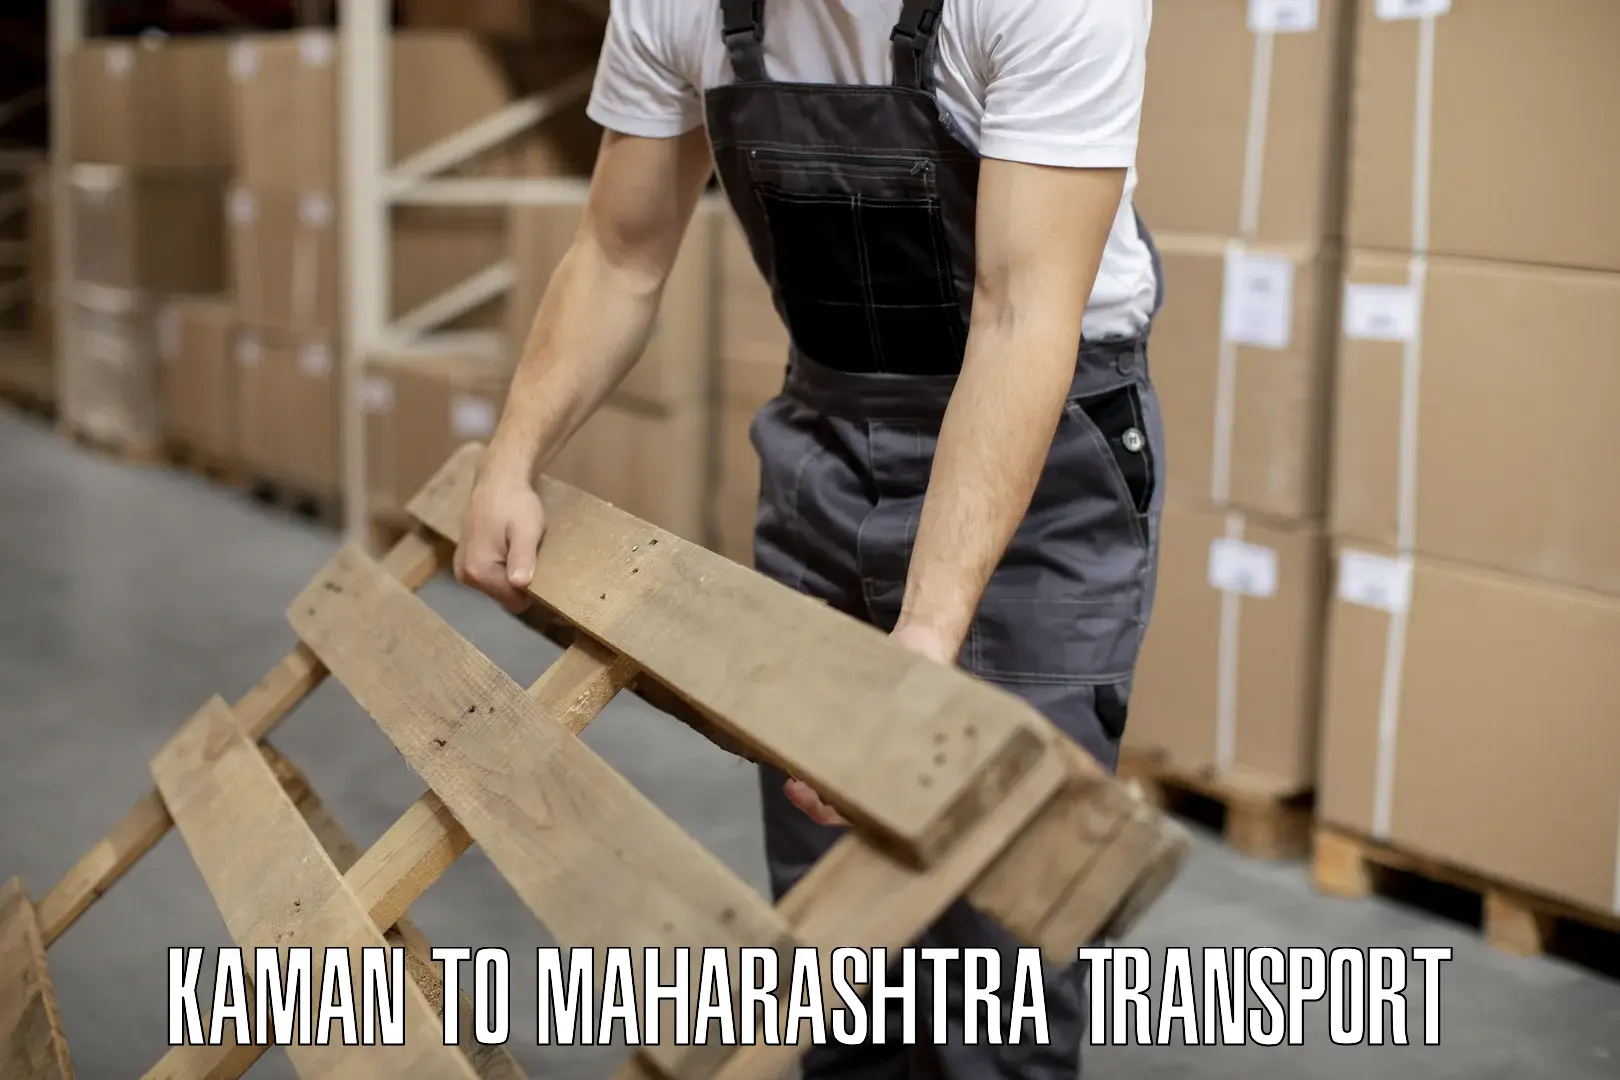 Container transport service Kaman to Mumbai